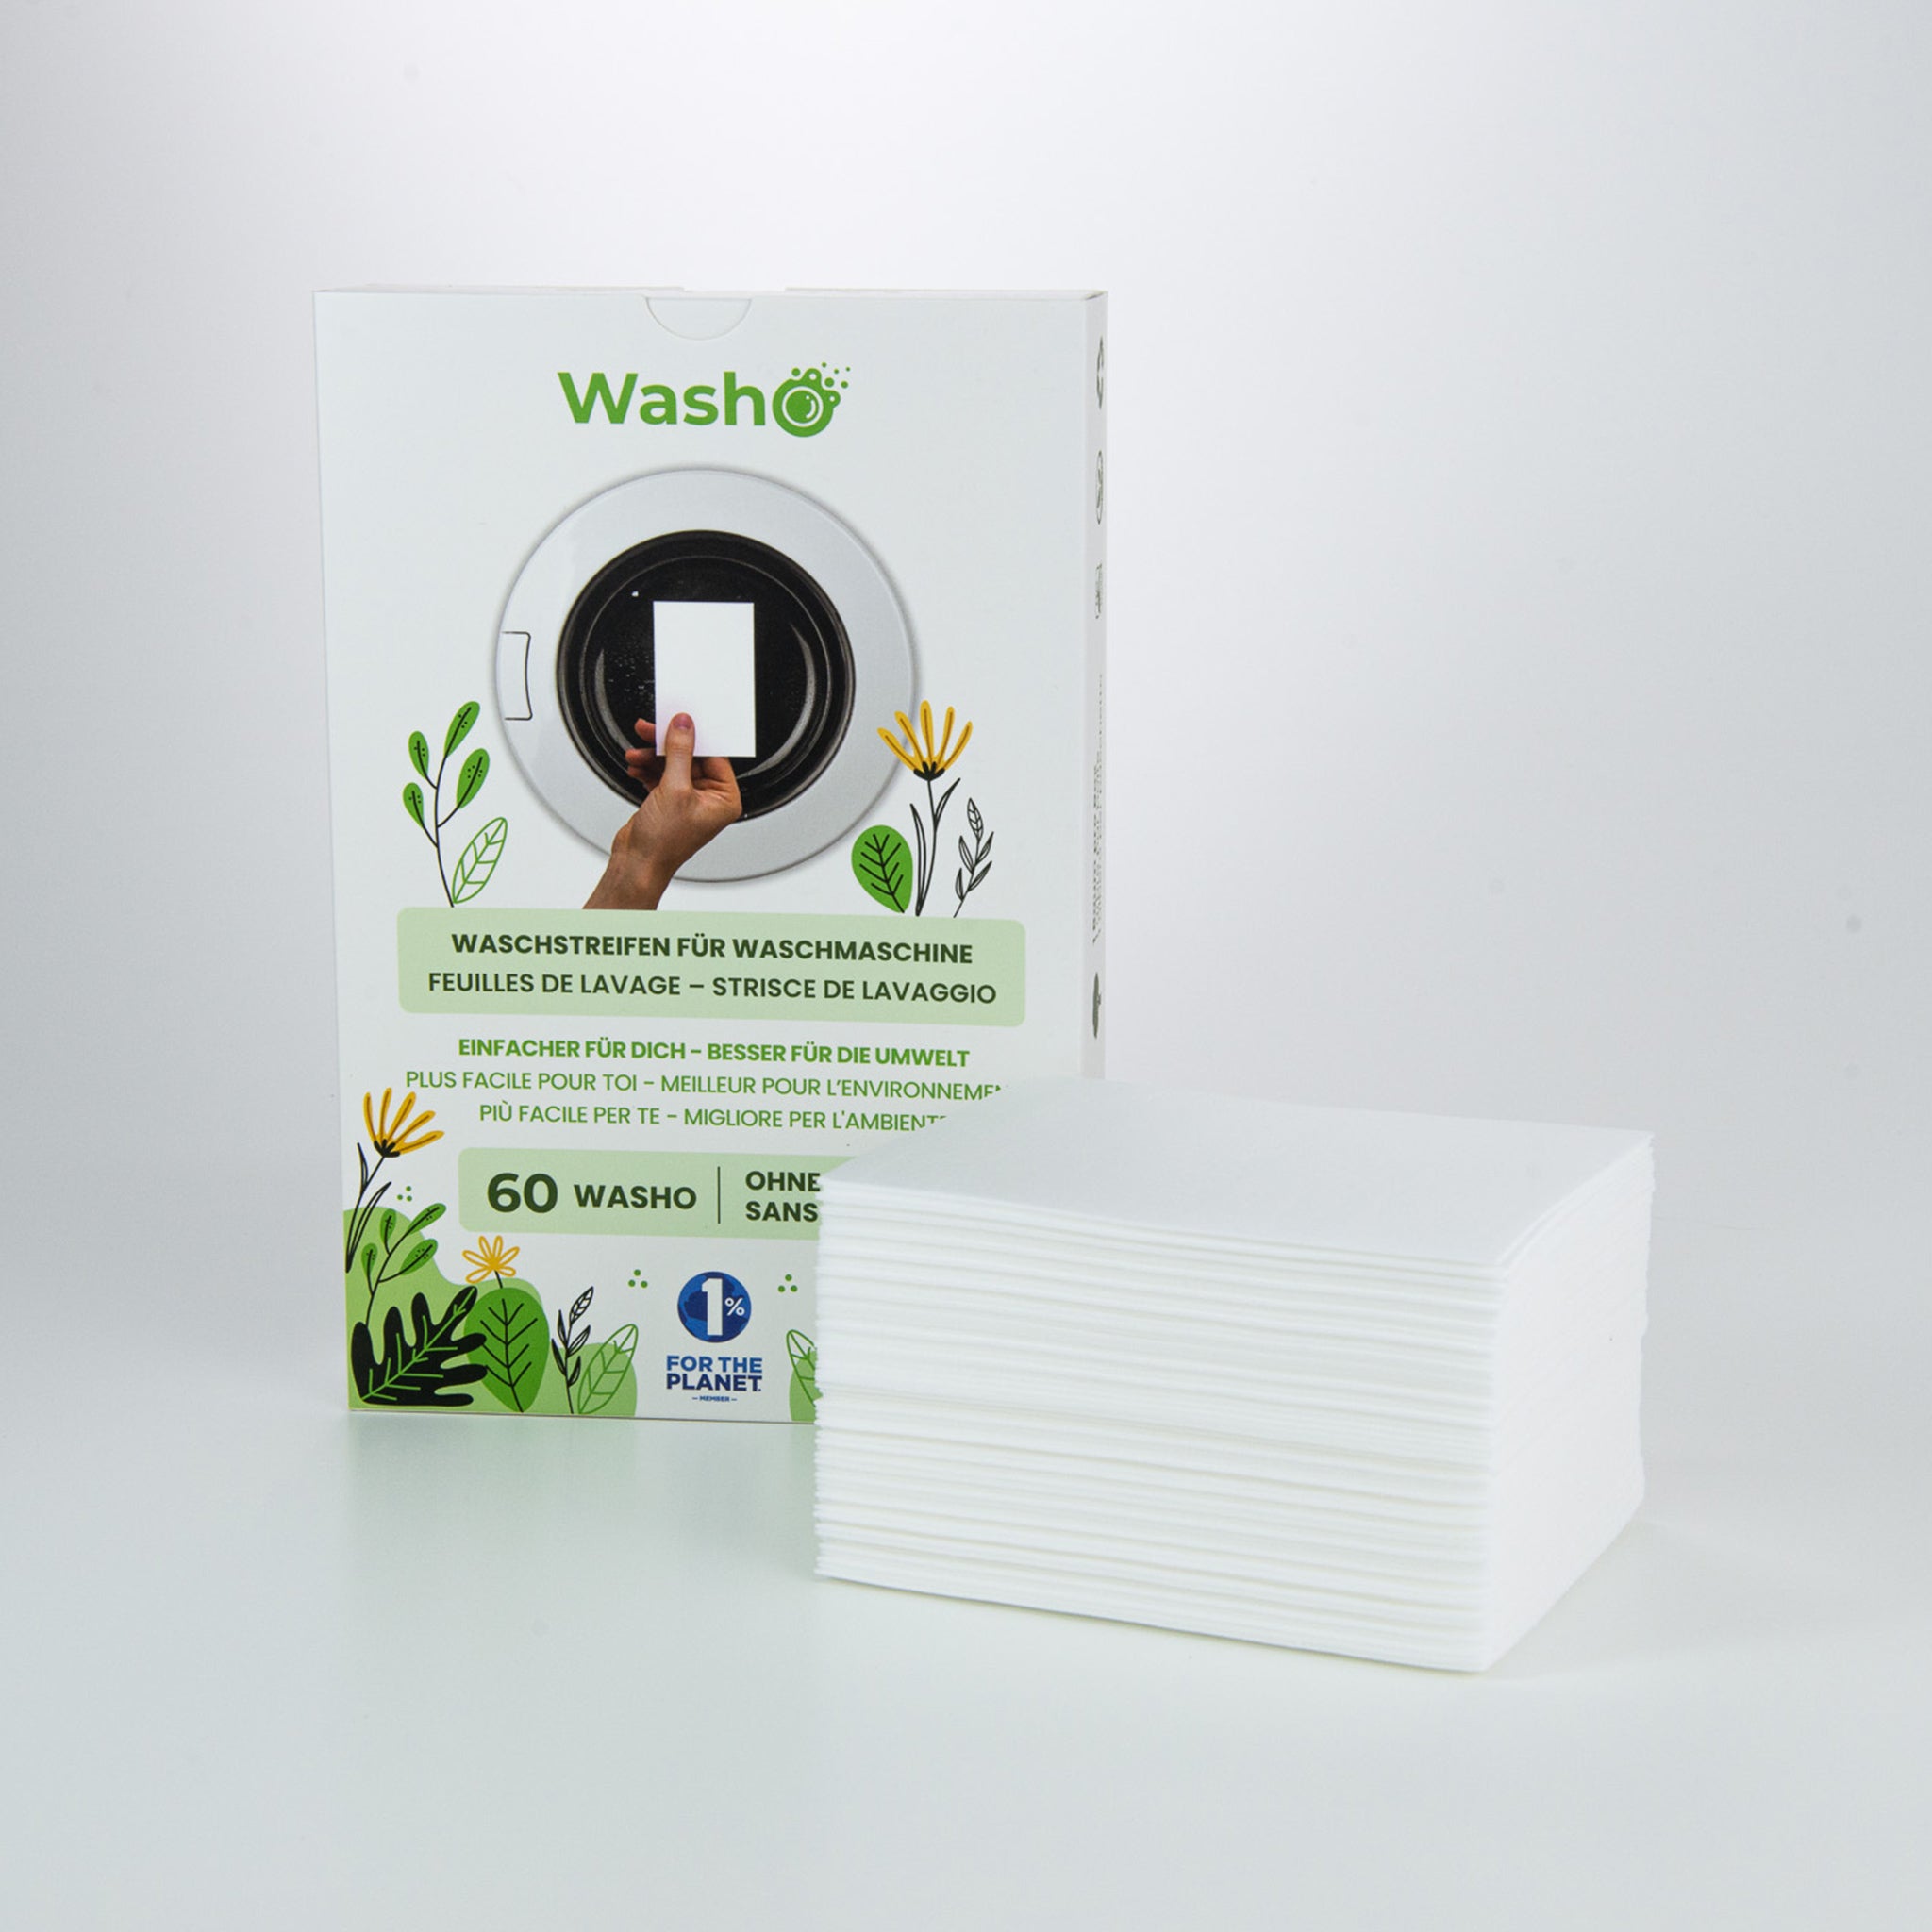 Washo strisce lavanti ecologiche senza profumo Set di 3